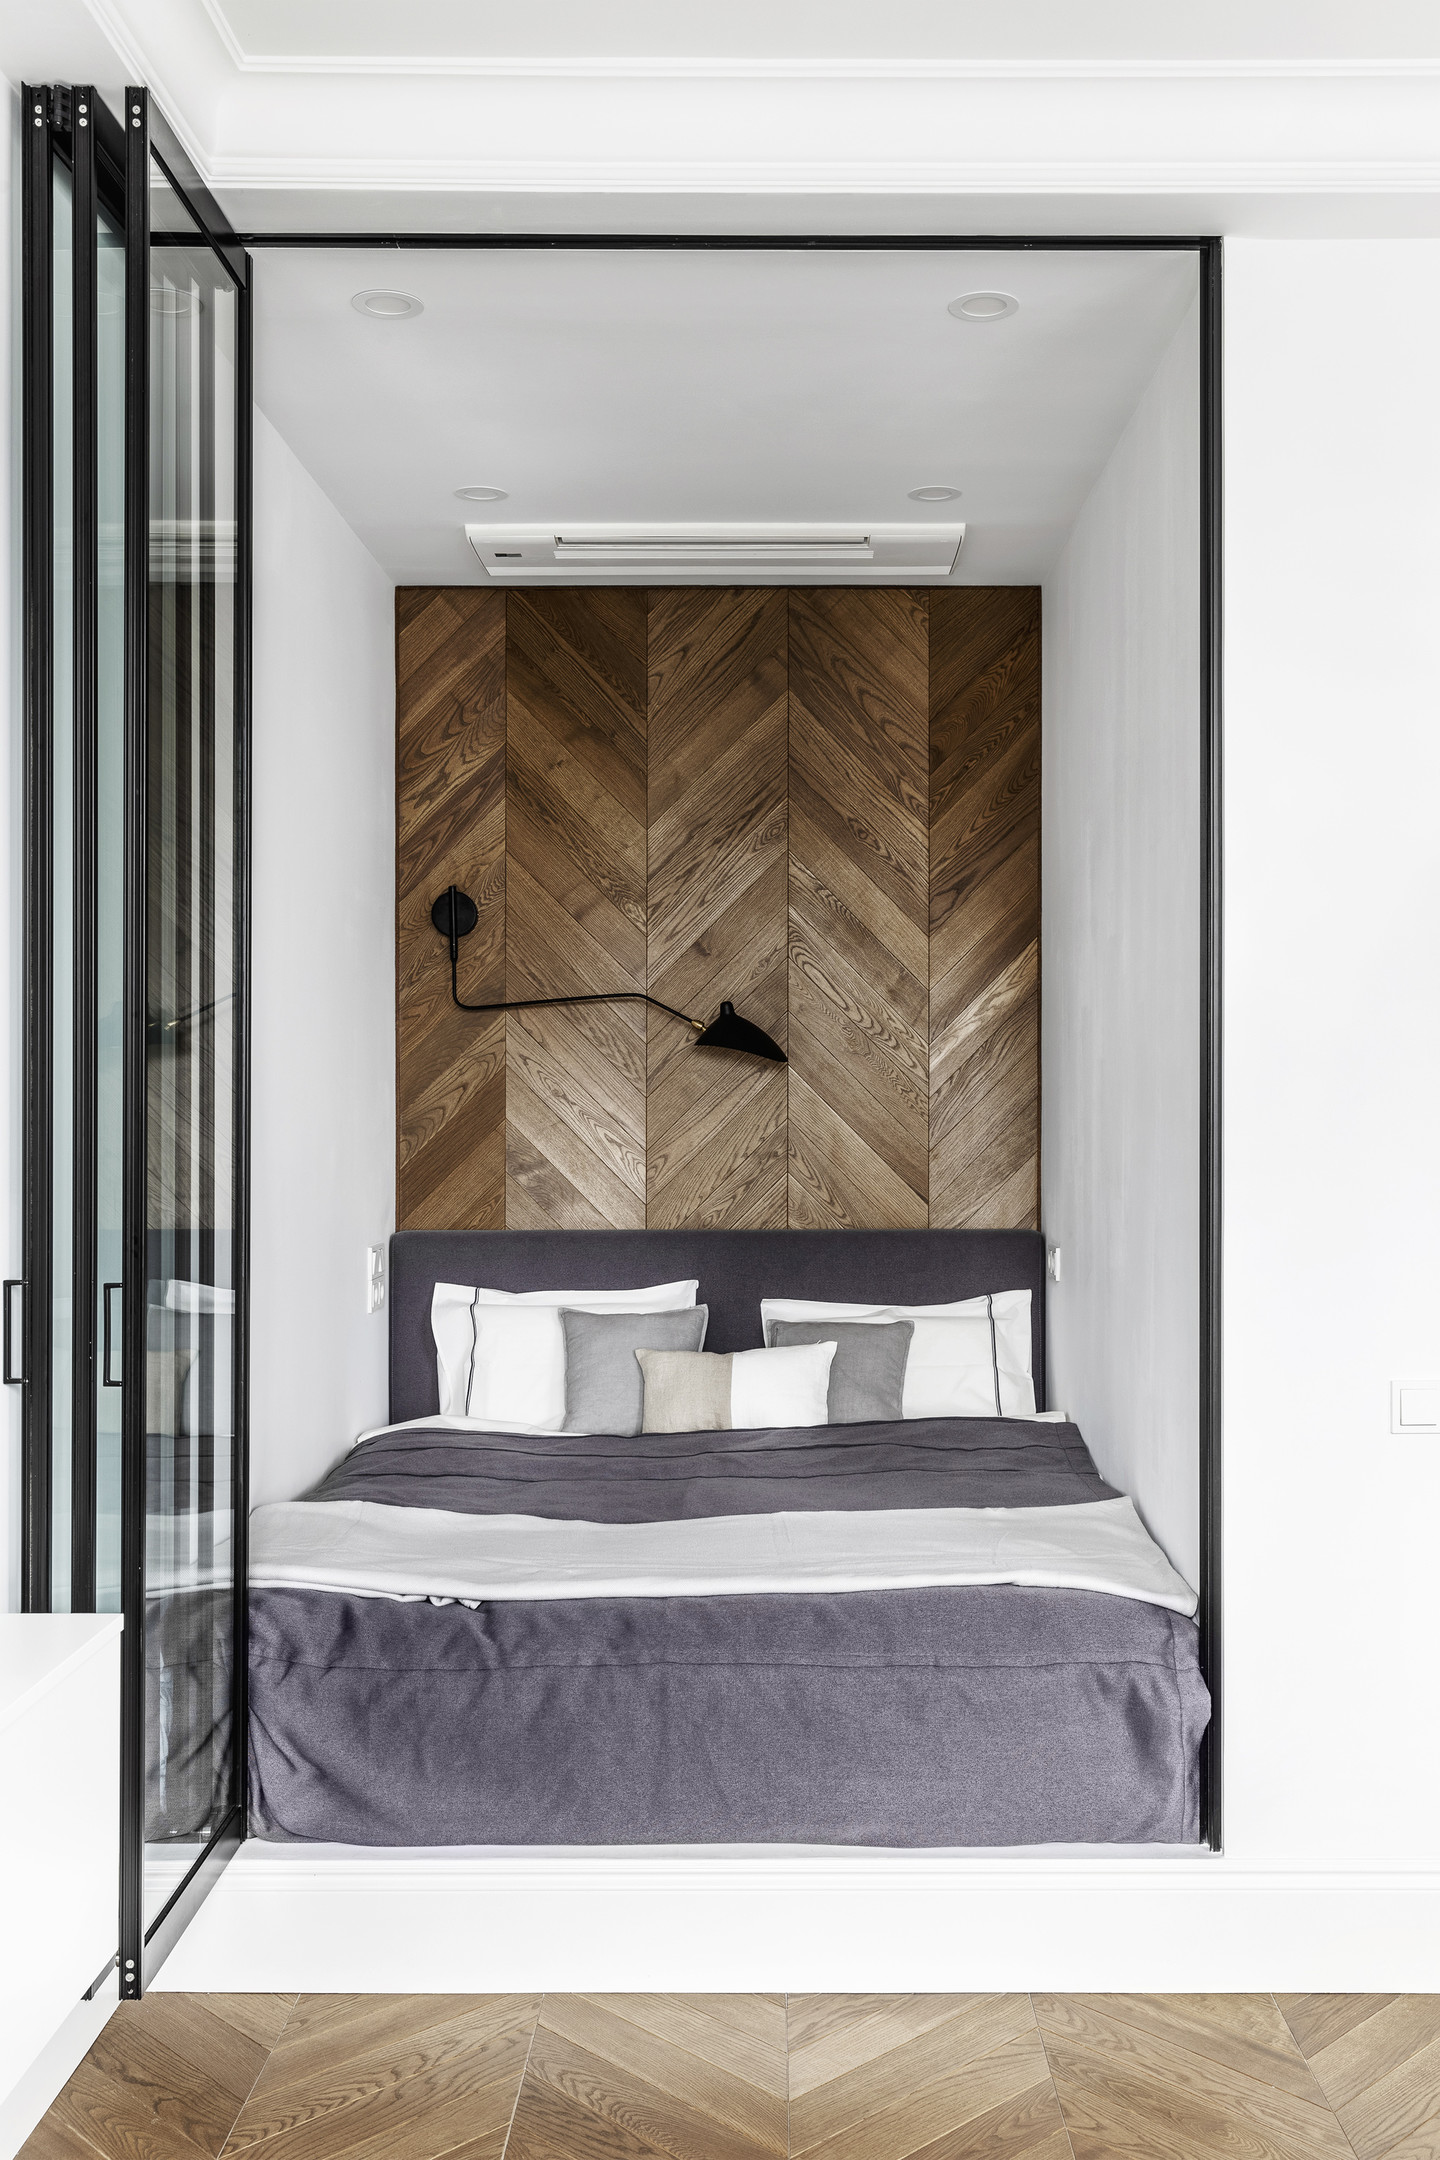 Căn hộ siêu nhỏ do Geometrium Design Studio thiết kế với phòng ngủ bố trí trong một hốc tường và sử dụng cửa kính trong suốt. Sự liên kết giữa gỗ lát sàn và gỗ ốp tường họa tiết xương cá tạo cái nhìn hài hòa đẹp mắt.